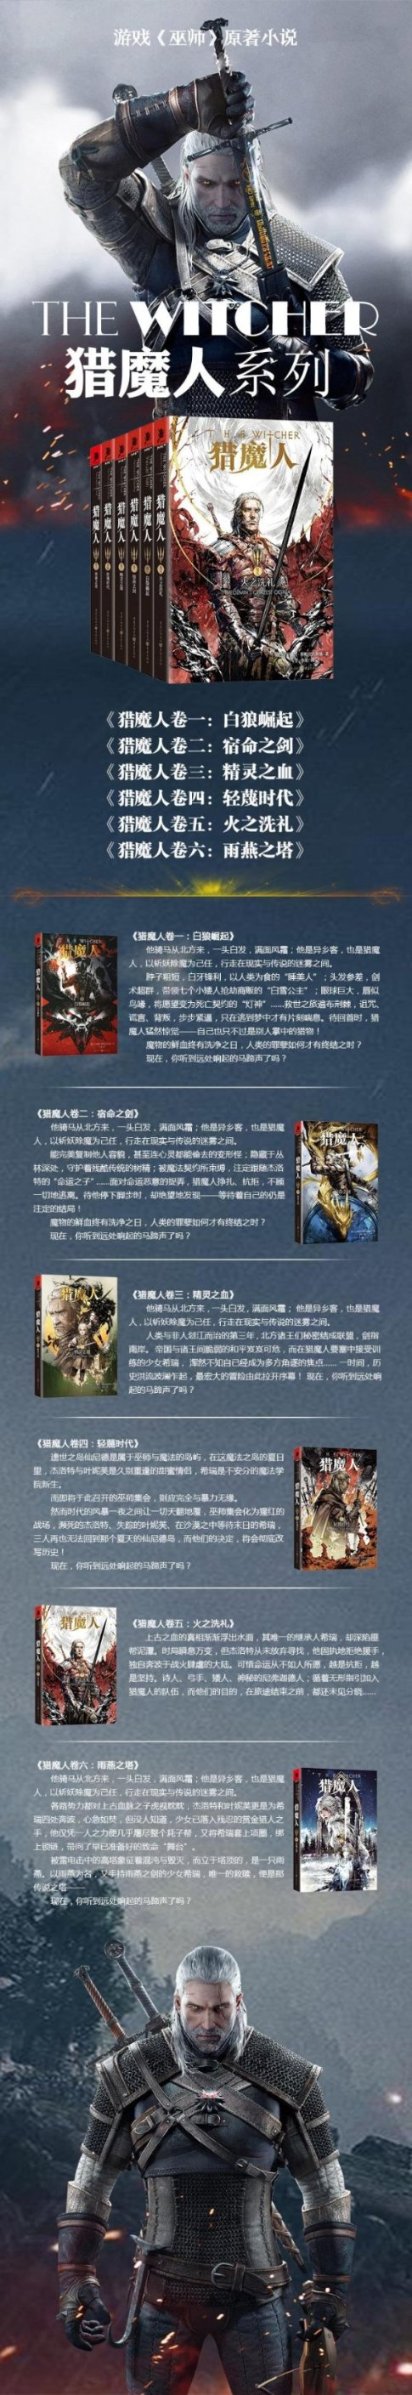 【正版包邮】 猎魔人卷一:白狼崛起 PS4 XBOX经典游戏《巫师》原著小说， 正版畅销外国文学奇幻魔幻小说